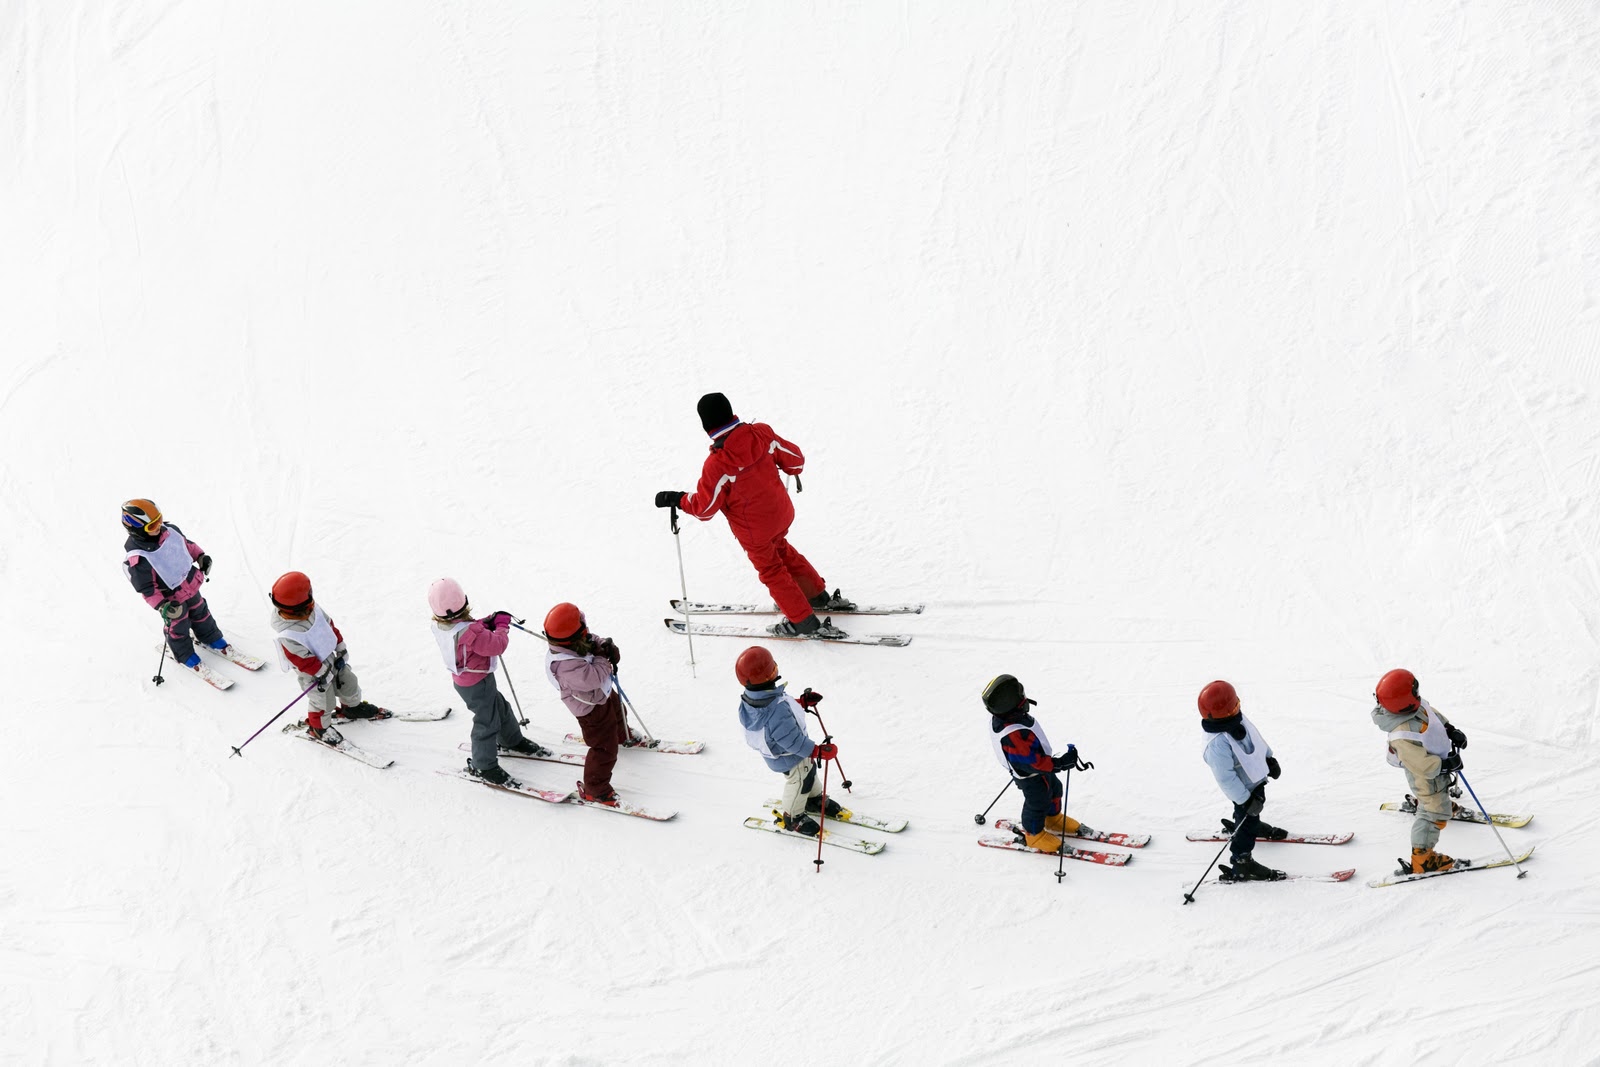 Los profesores de esquí antiguos quieren impartir sólo a niños pequeños